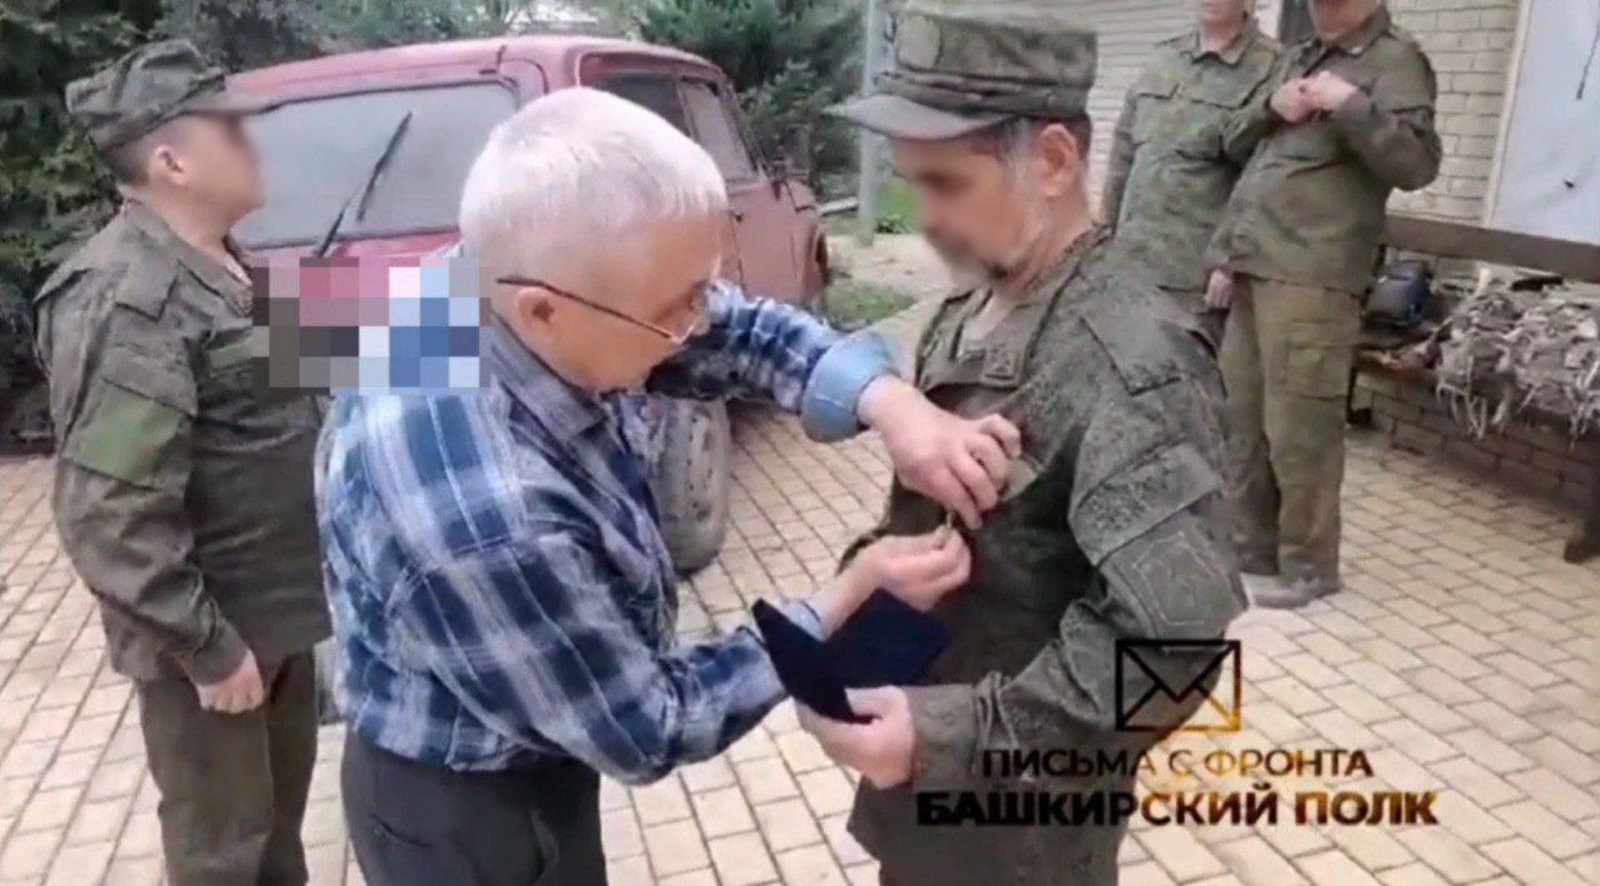 Бойцы из Башкирии награждены медалями генерала Шаймуратова